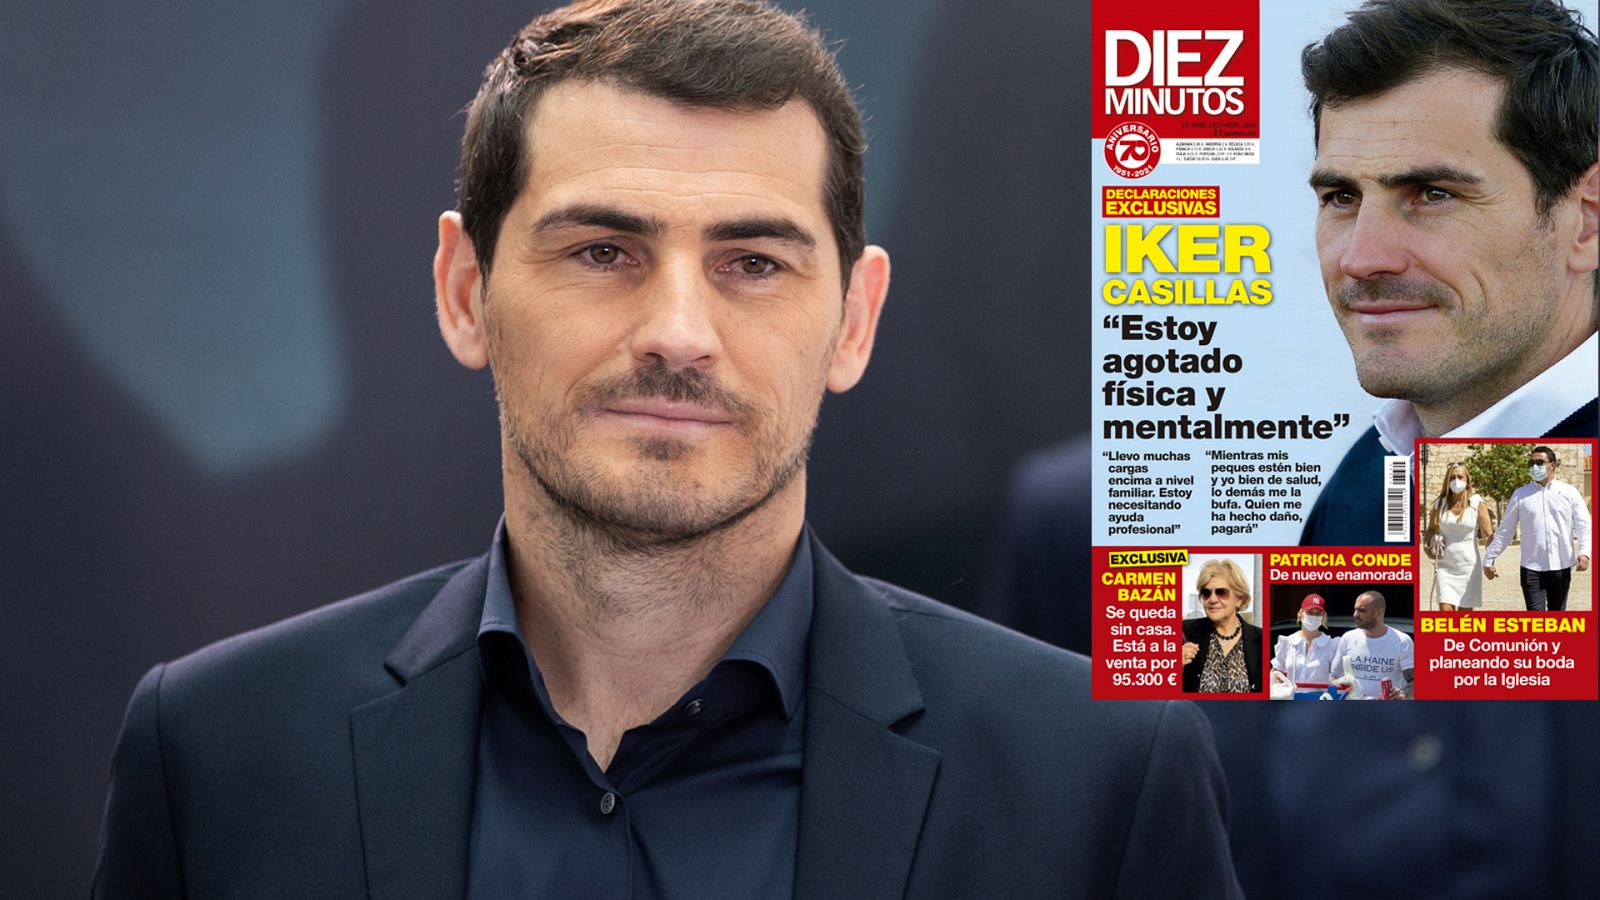 Iker Casillas, indignado, dice que no ha dado declaraciones a la revista 'Diez Minutos'